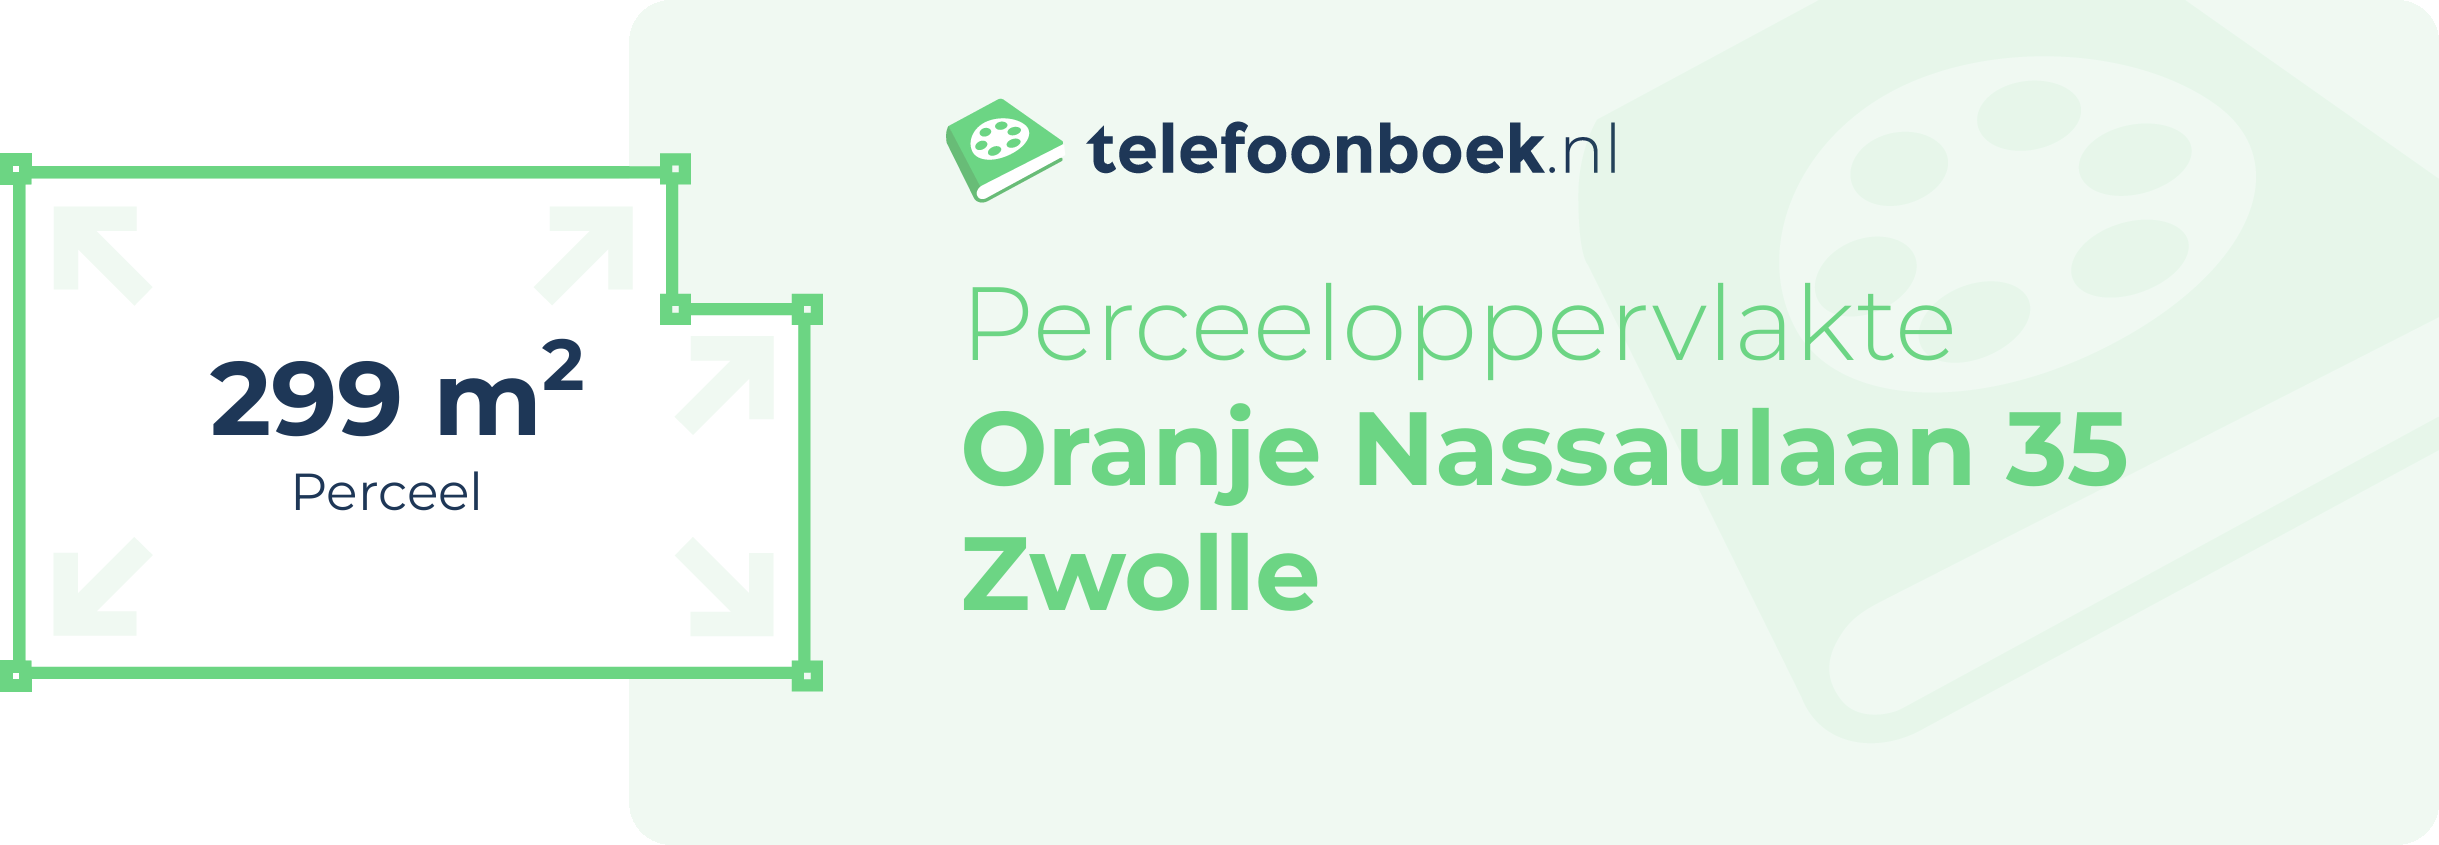 Perceeloppervlakte Oranje Nassaulaan 35 Zwolle